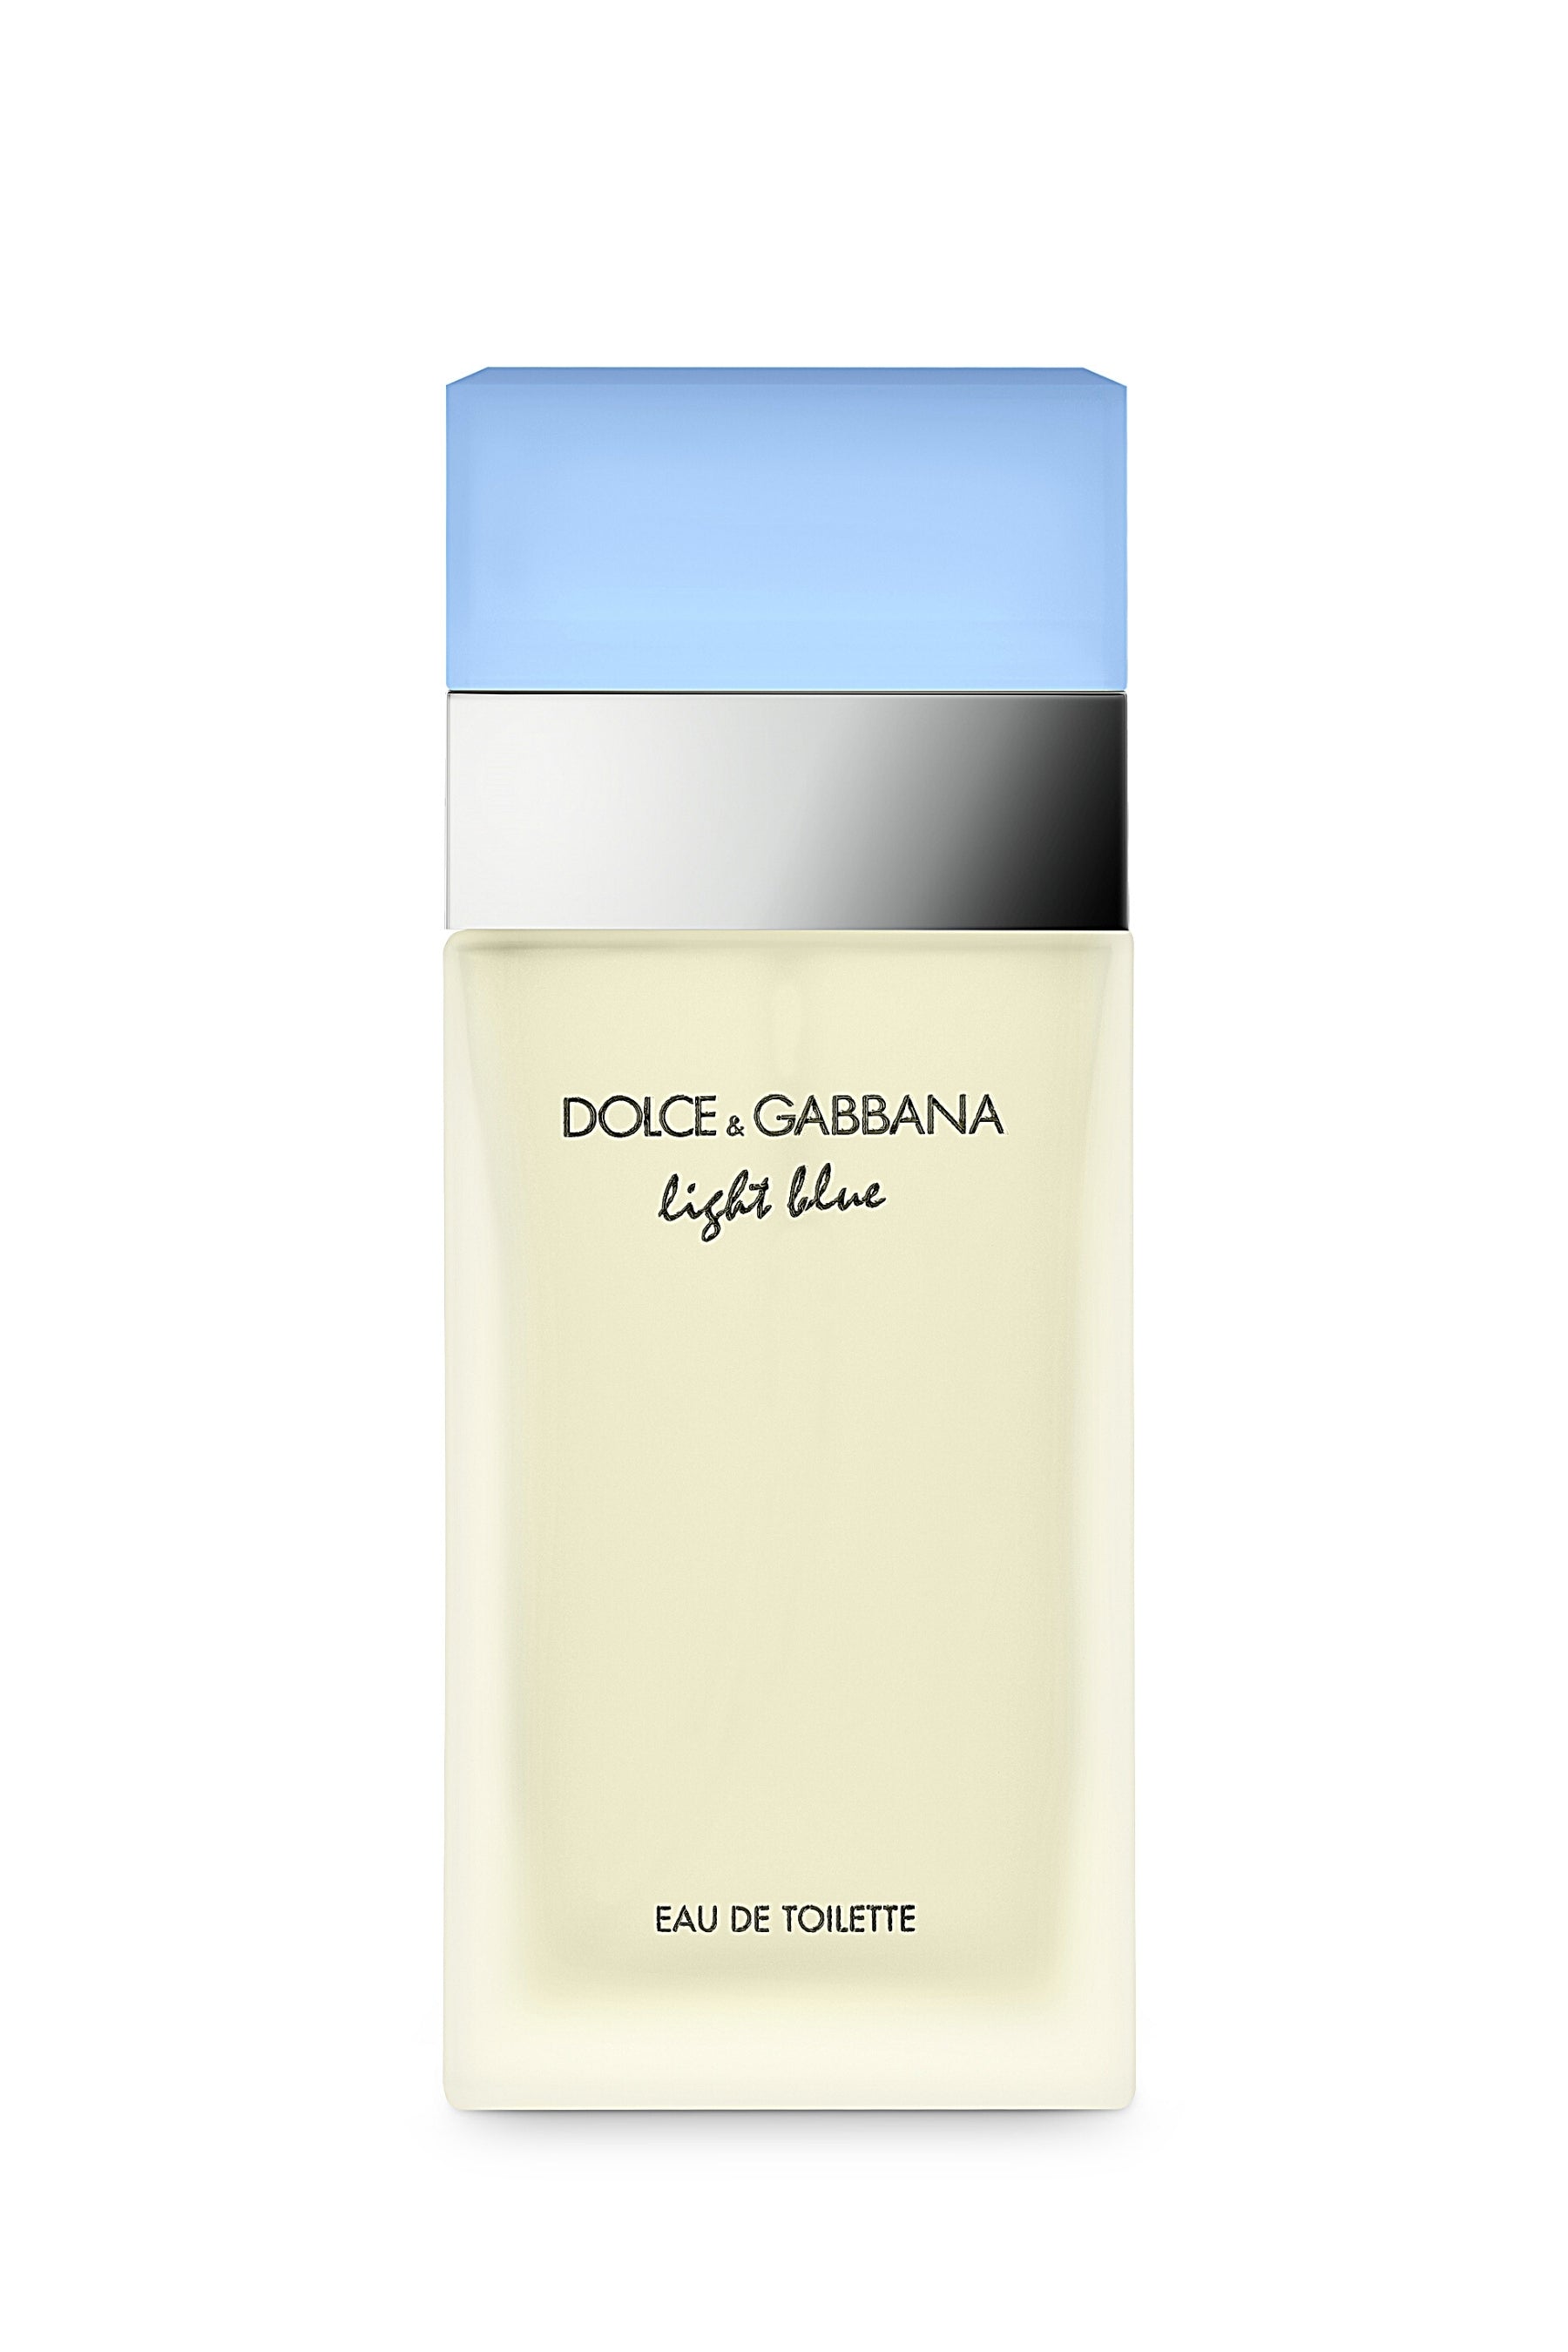 atleet Gezond eten Tomaat Dolce & Gabbana | Light Blue EDT - REBL